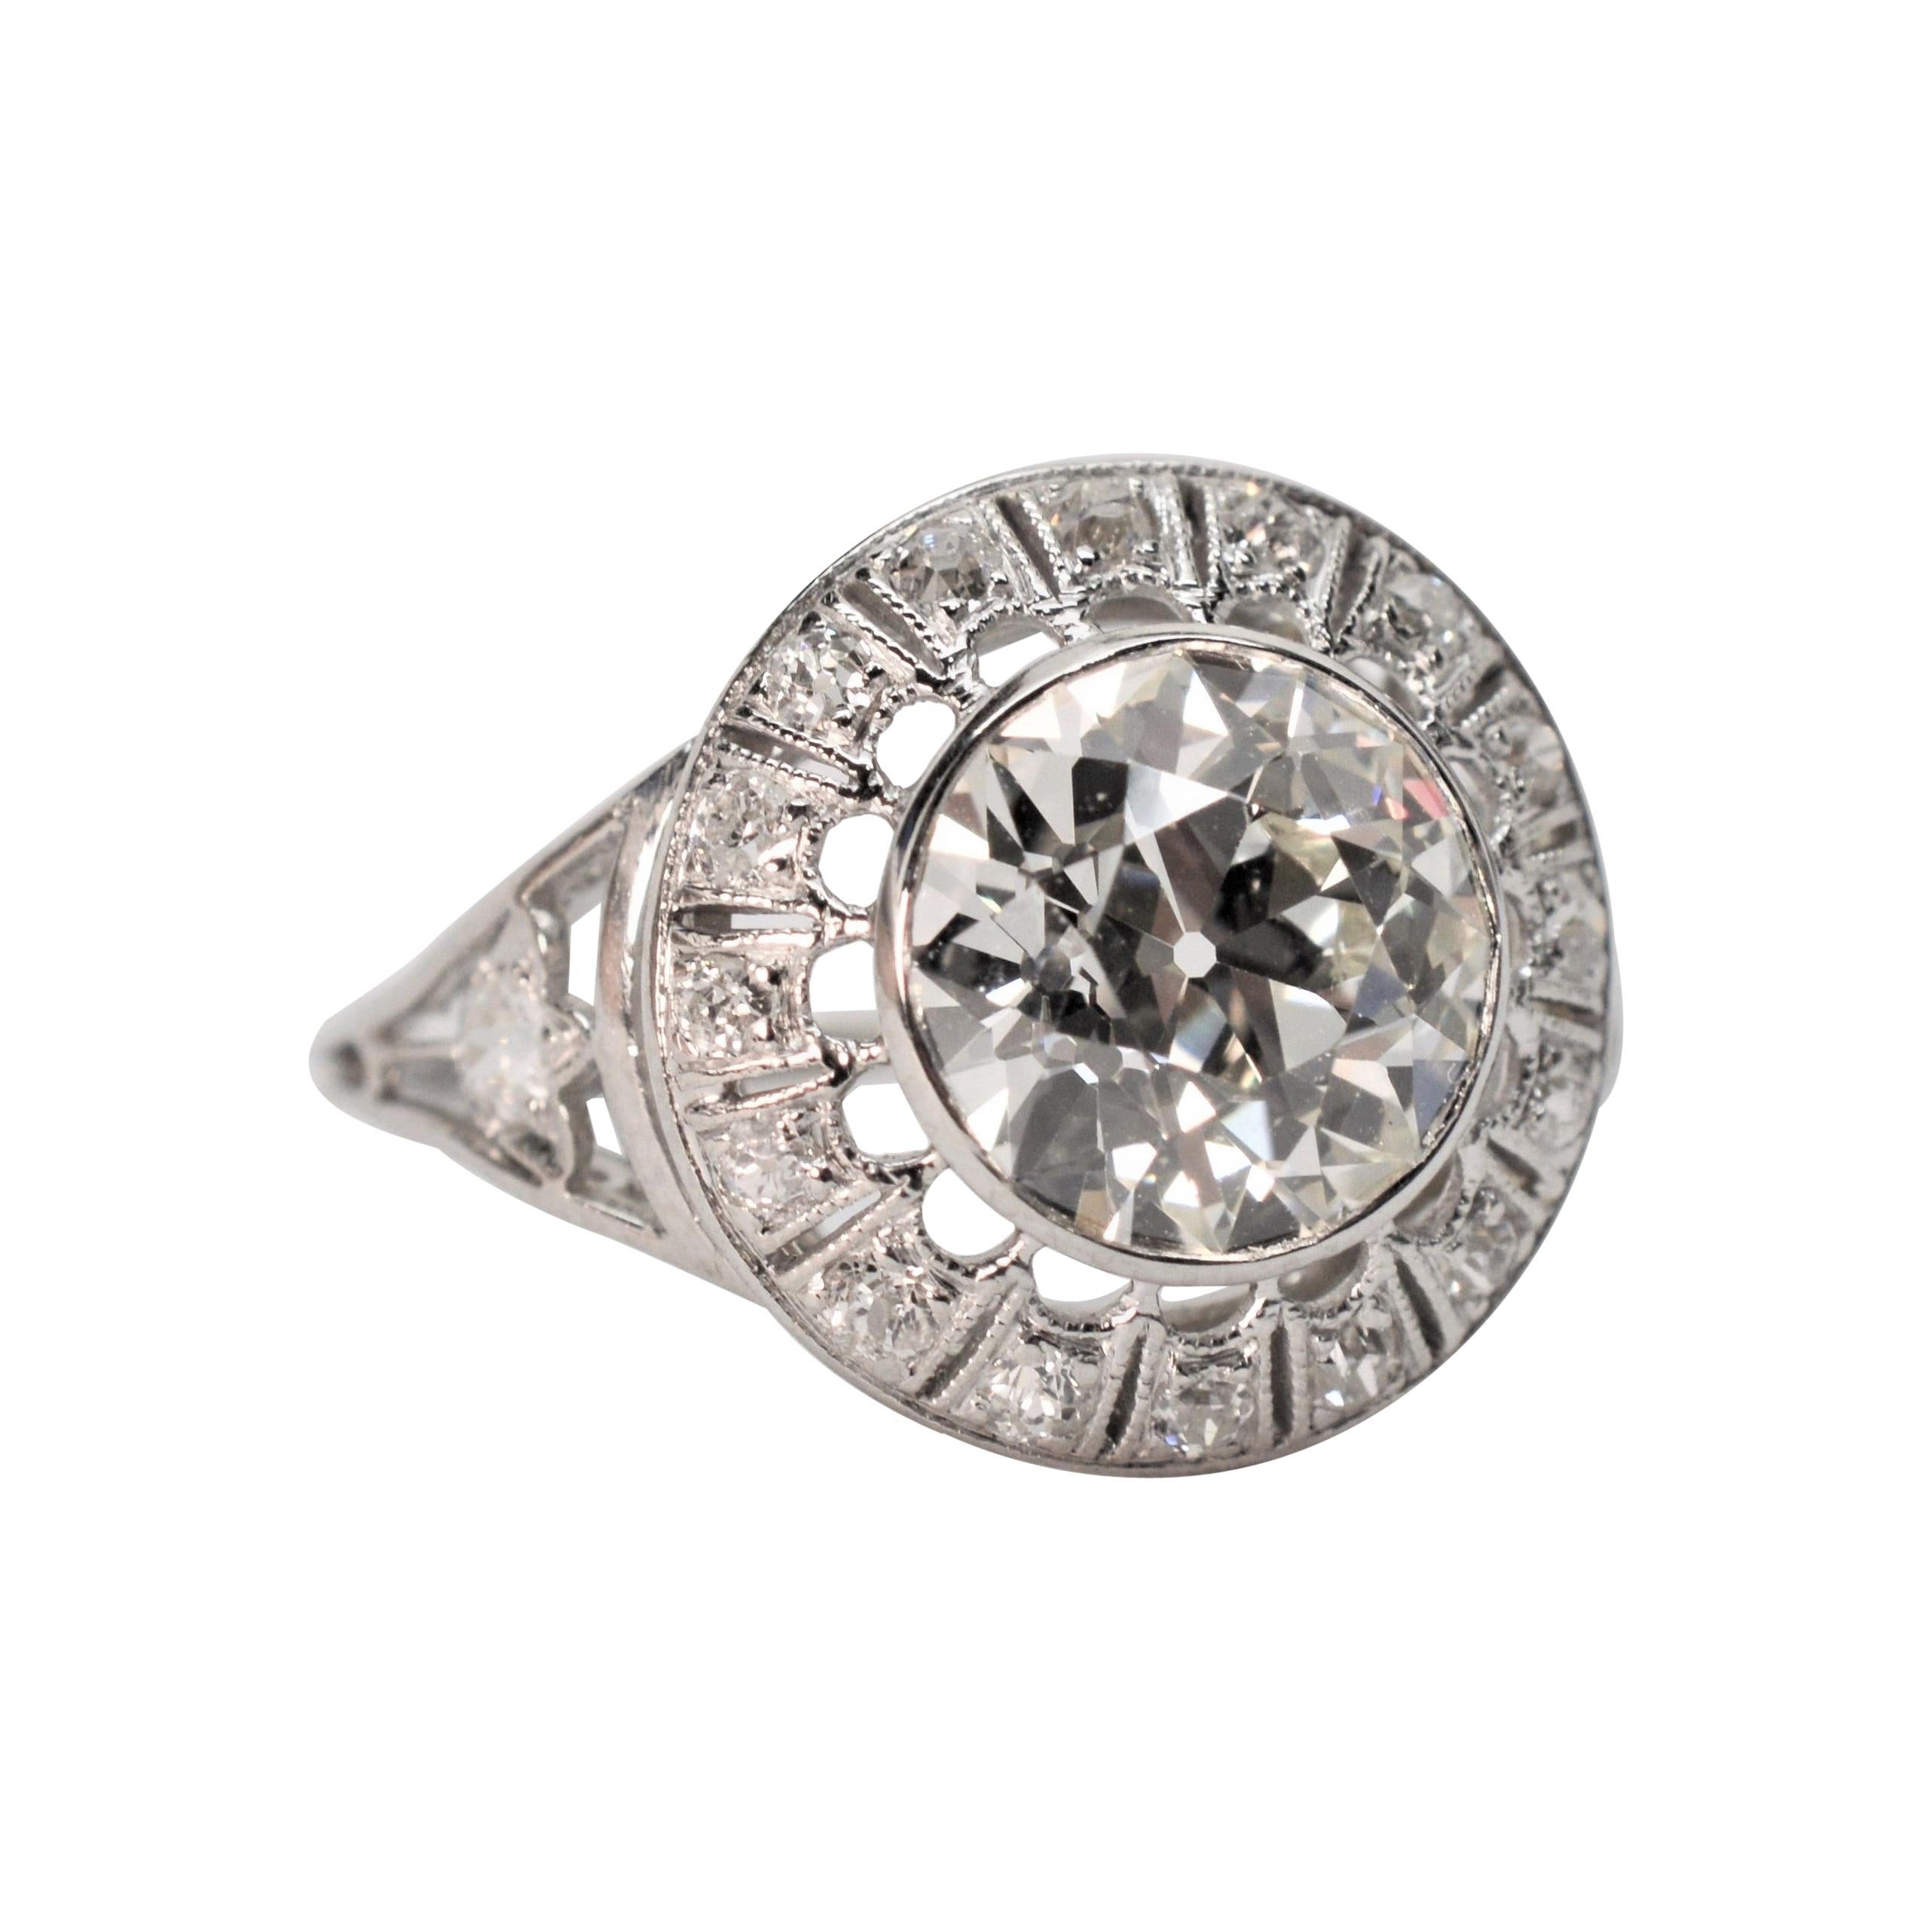 Antique Old European Cut 2.25 Carat Diamond Platinum Engagement Ring